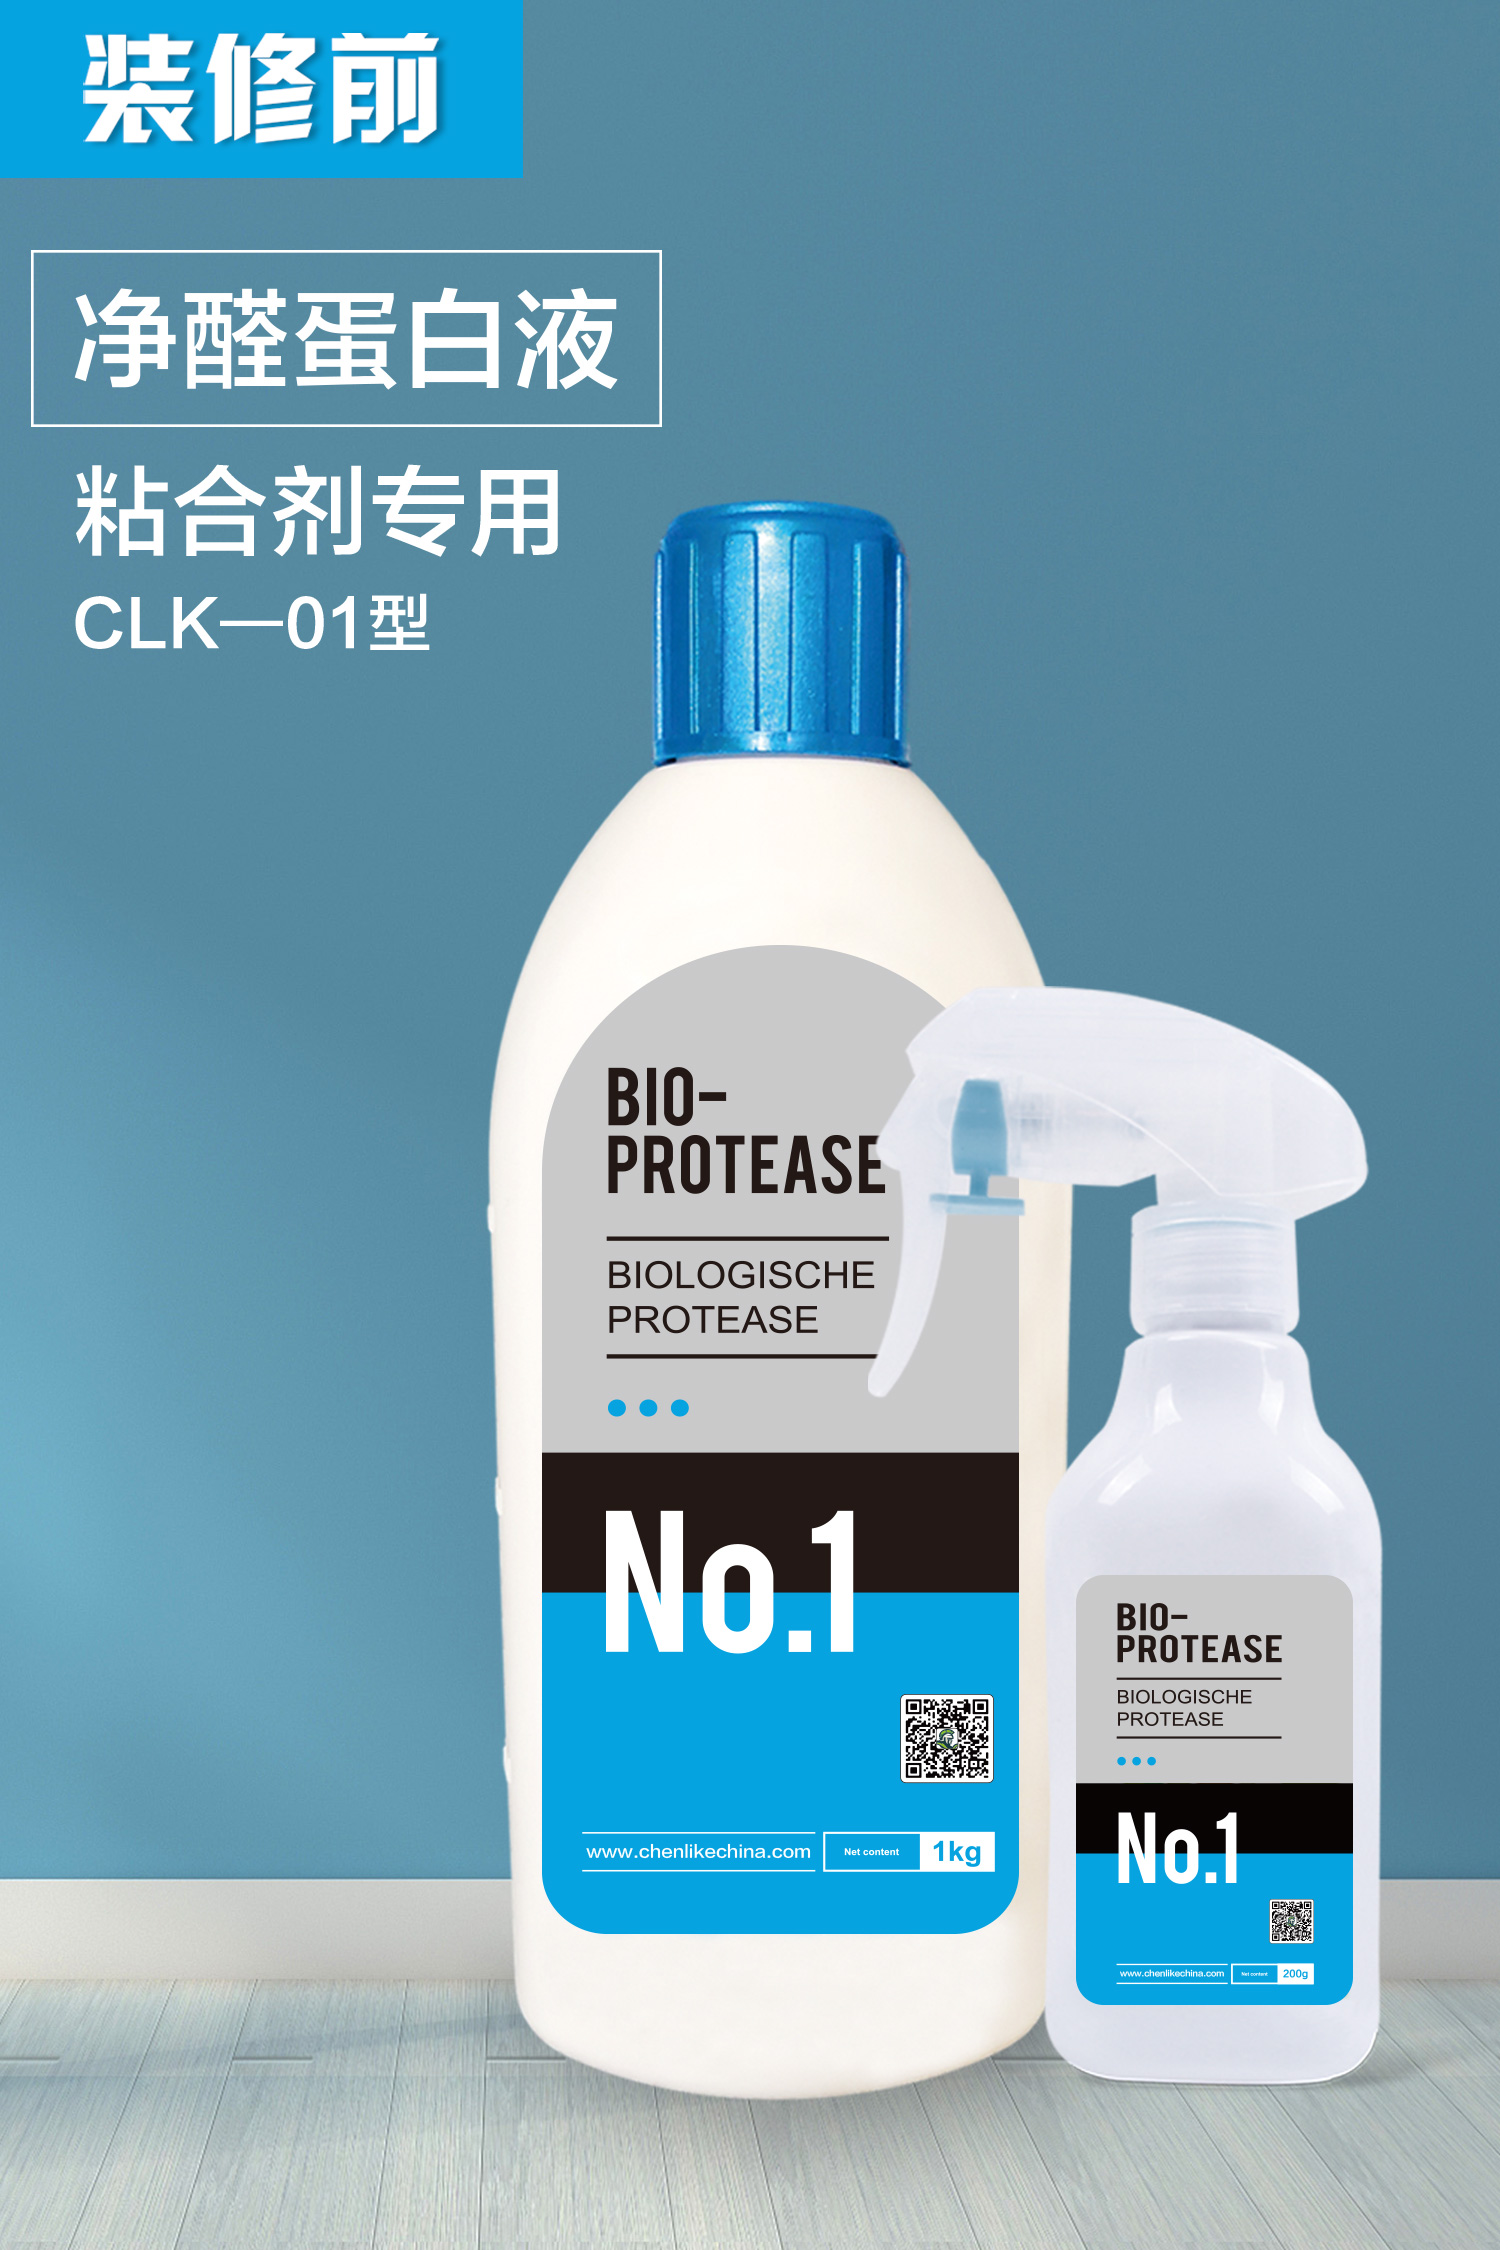 净醛蛋白液 CLK—01型